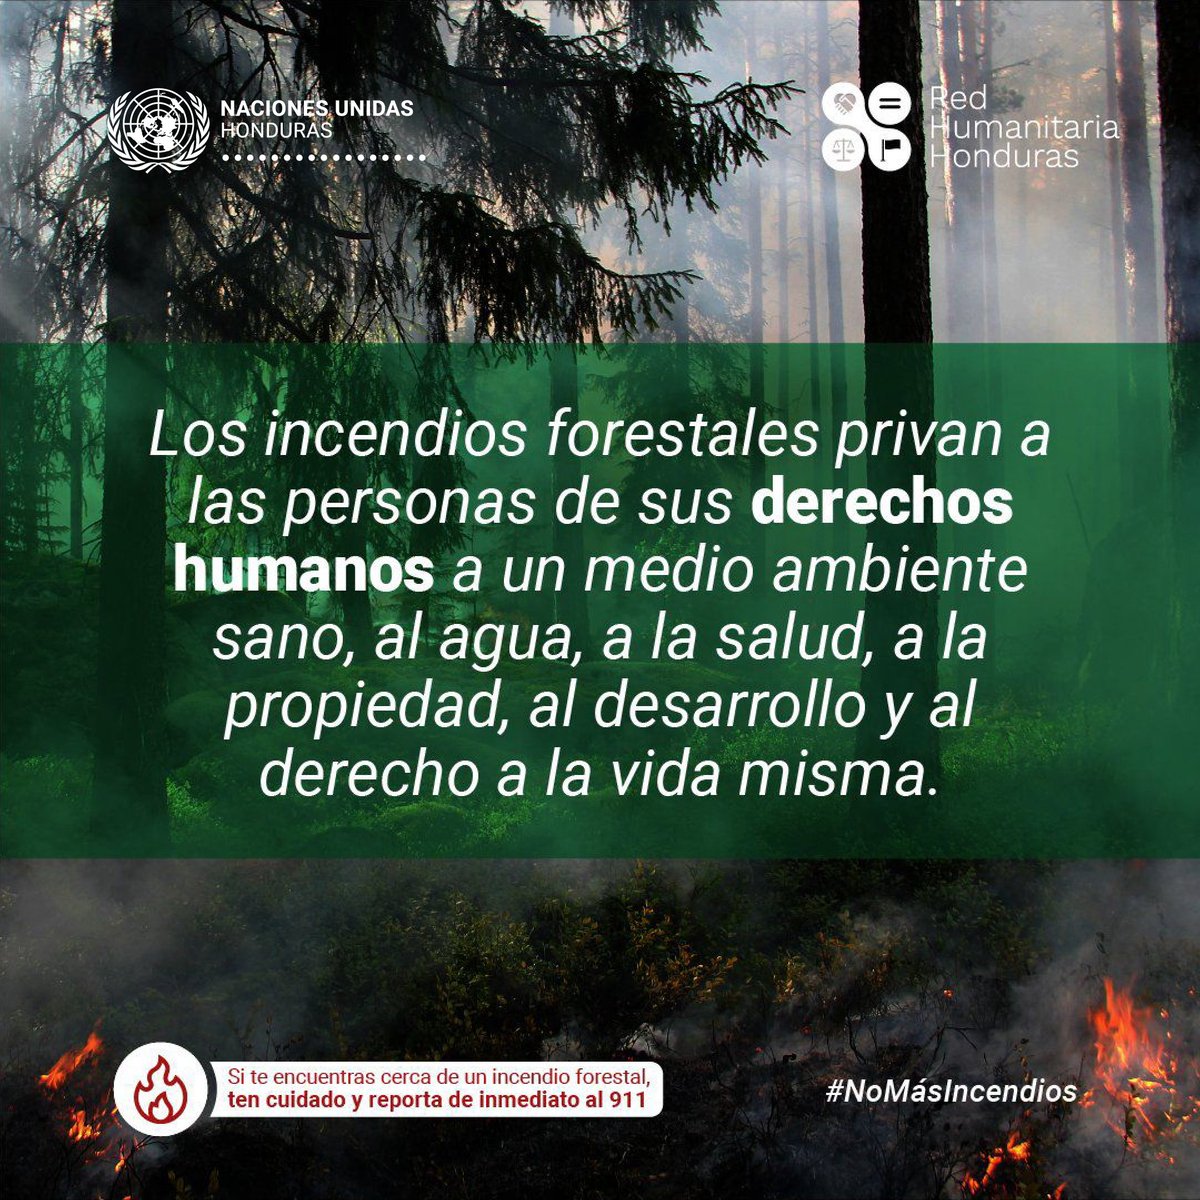 La protección de los bosques es nuestra responsabilidad, hoy y siempre. Segun el @ICFHonduras, 🇭🇳 ha registrado 685 incendios hasta el 20 de marzo de este año, una cifra alarmante que tenemos que detener. Reportemos todo acto que arriesgue nuestros bosques. #NoMásIncendios